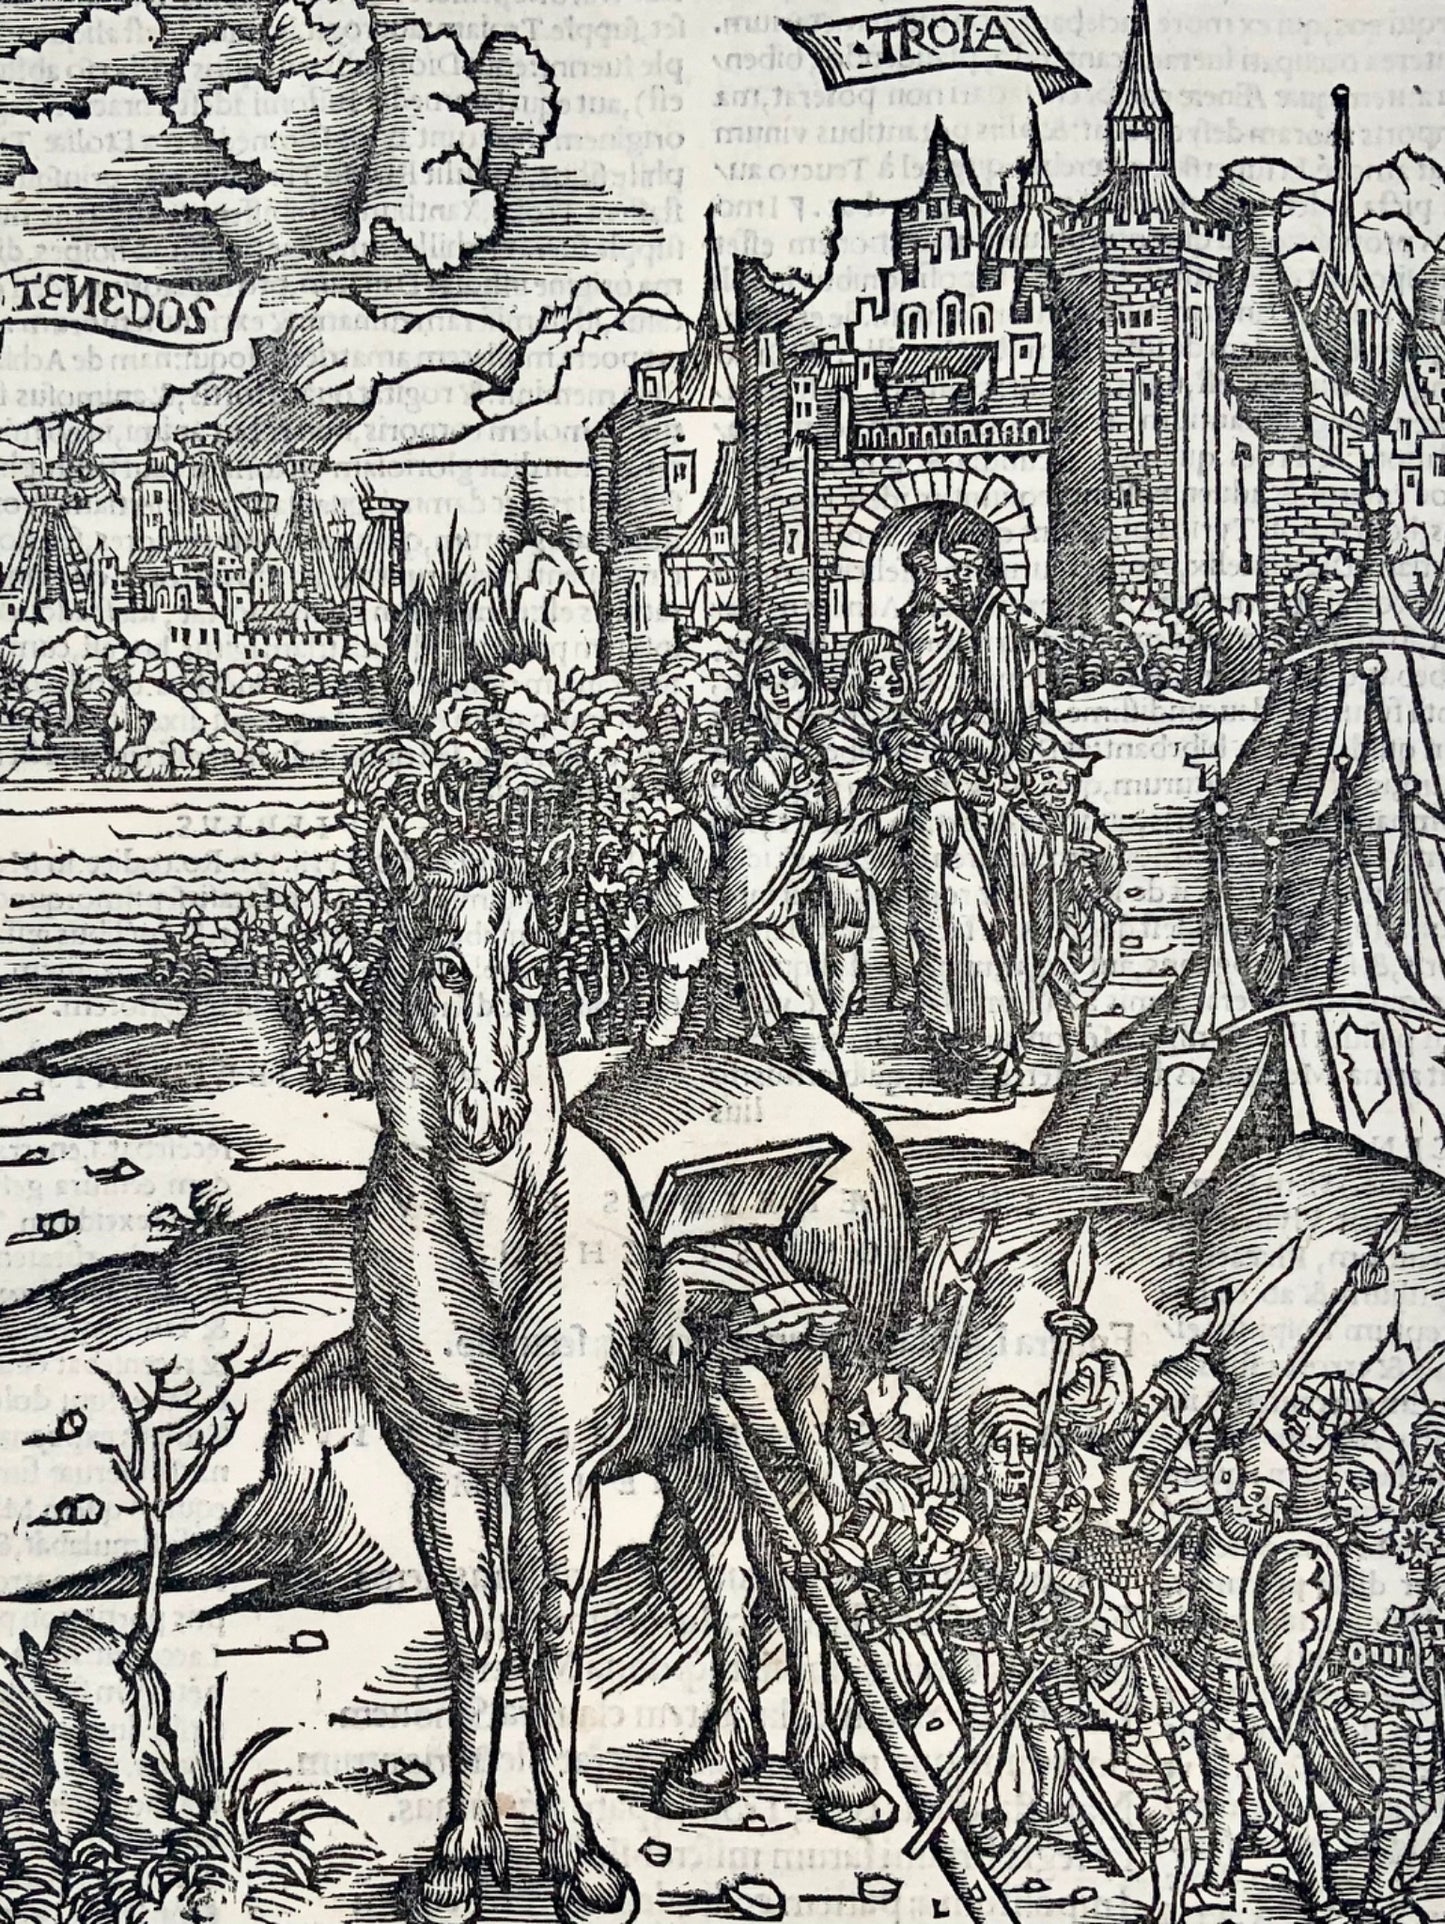 1517 Folio Gruninger foglia in legno dall'Eneide di Virgilio, cavallo di Troia, mitologia, incisione magistrale